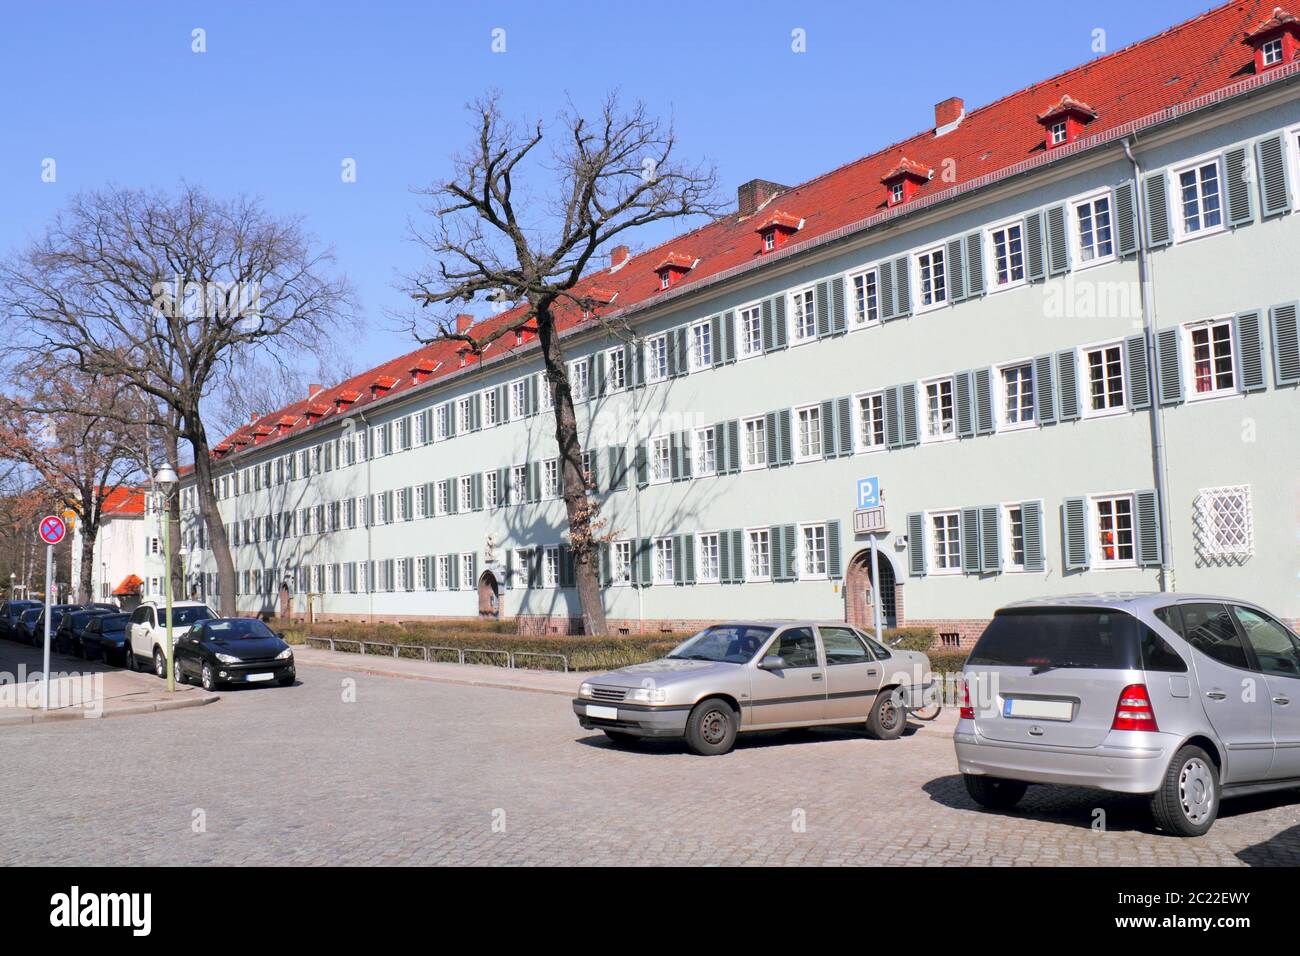 Residential monument Siemensstadt Stock Photo